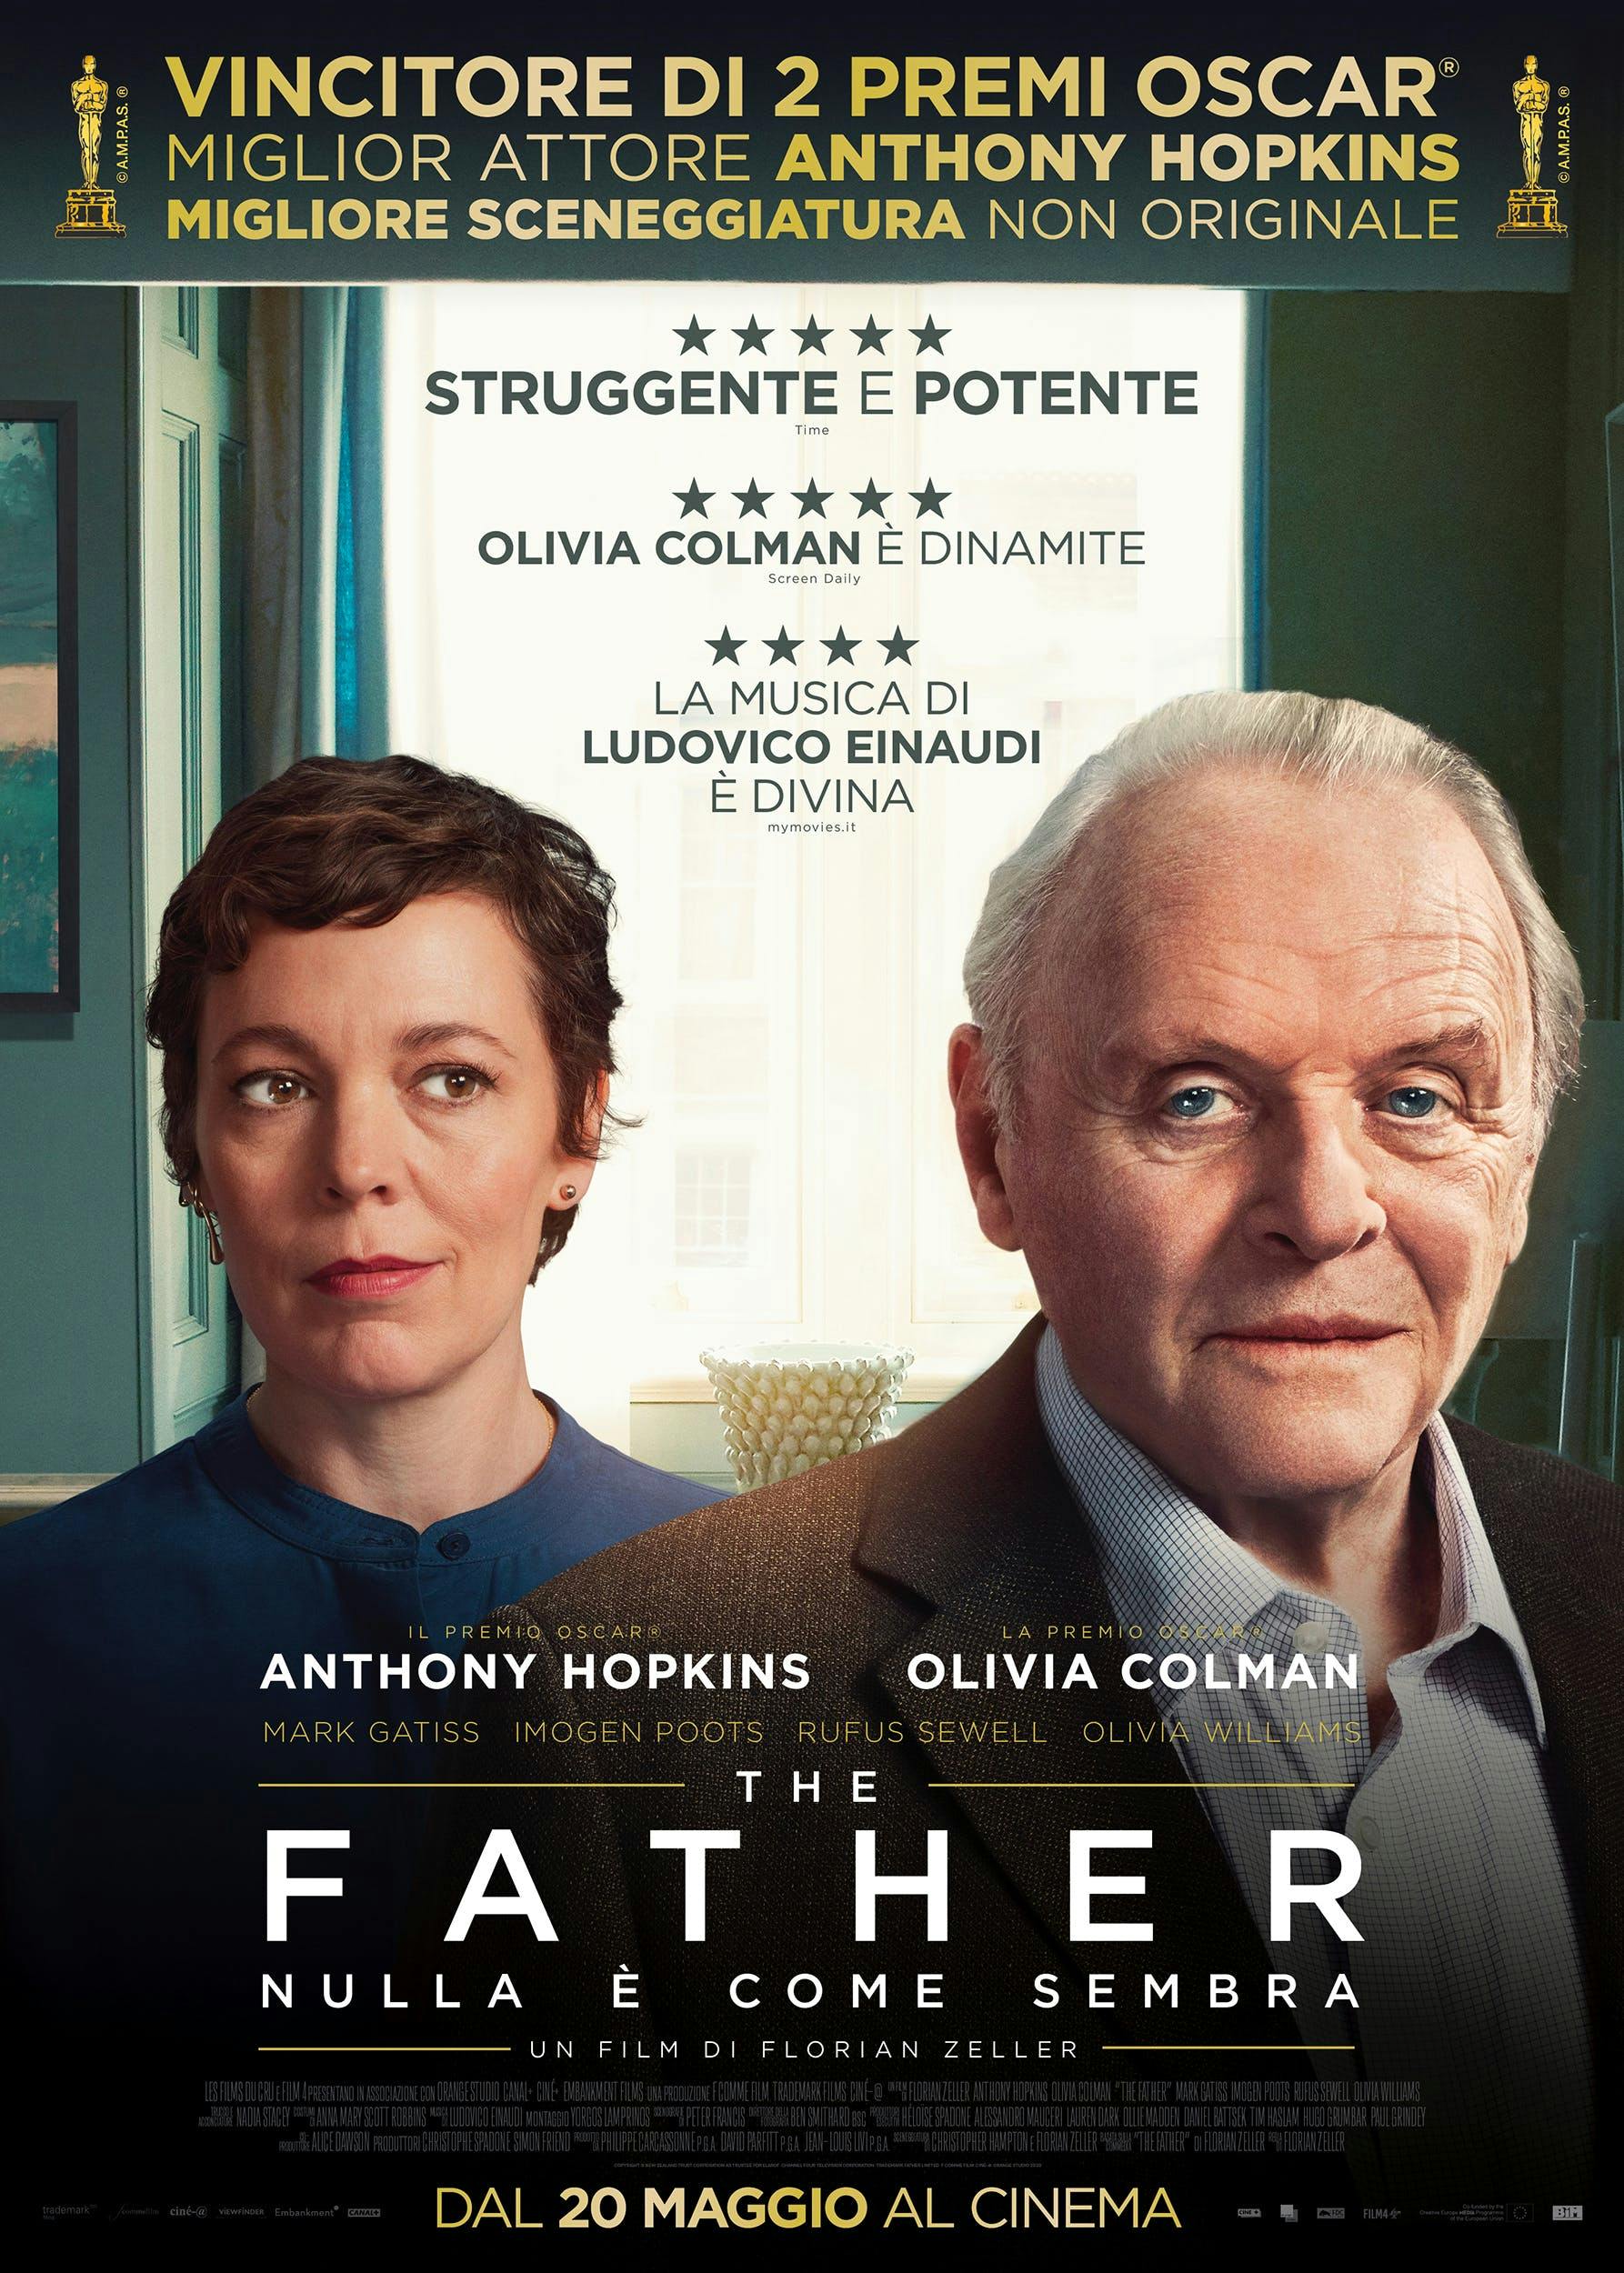 Nella foto la locandina del film "The Father"